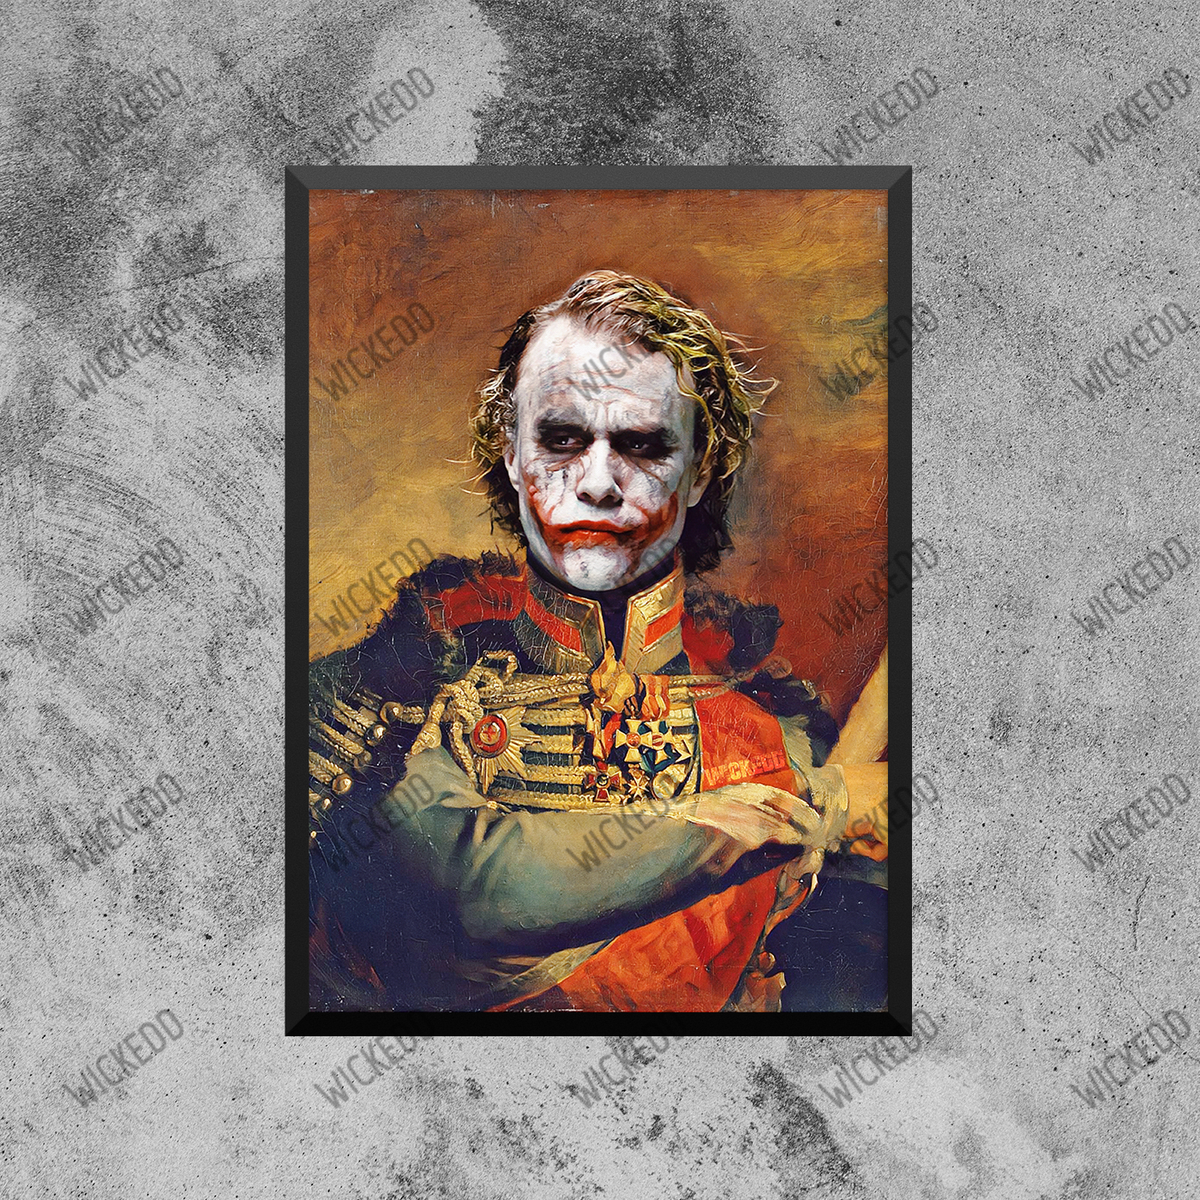 General Joker (Heath)